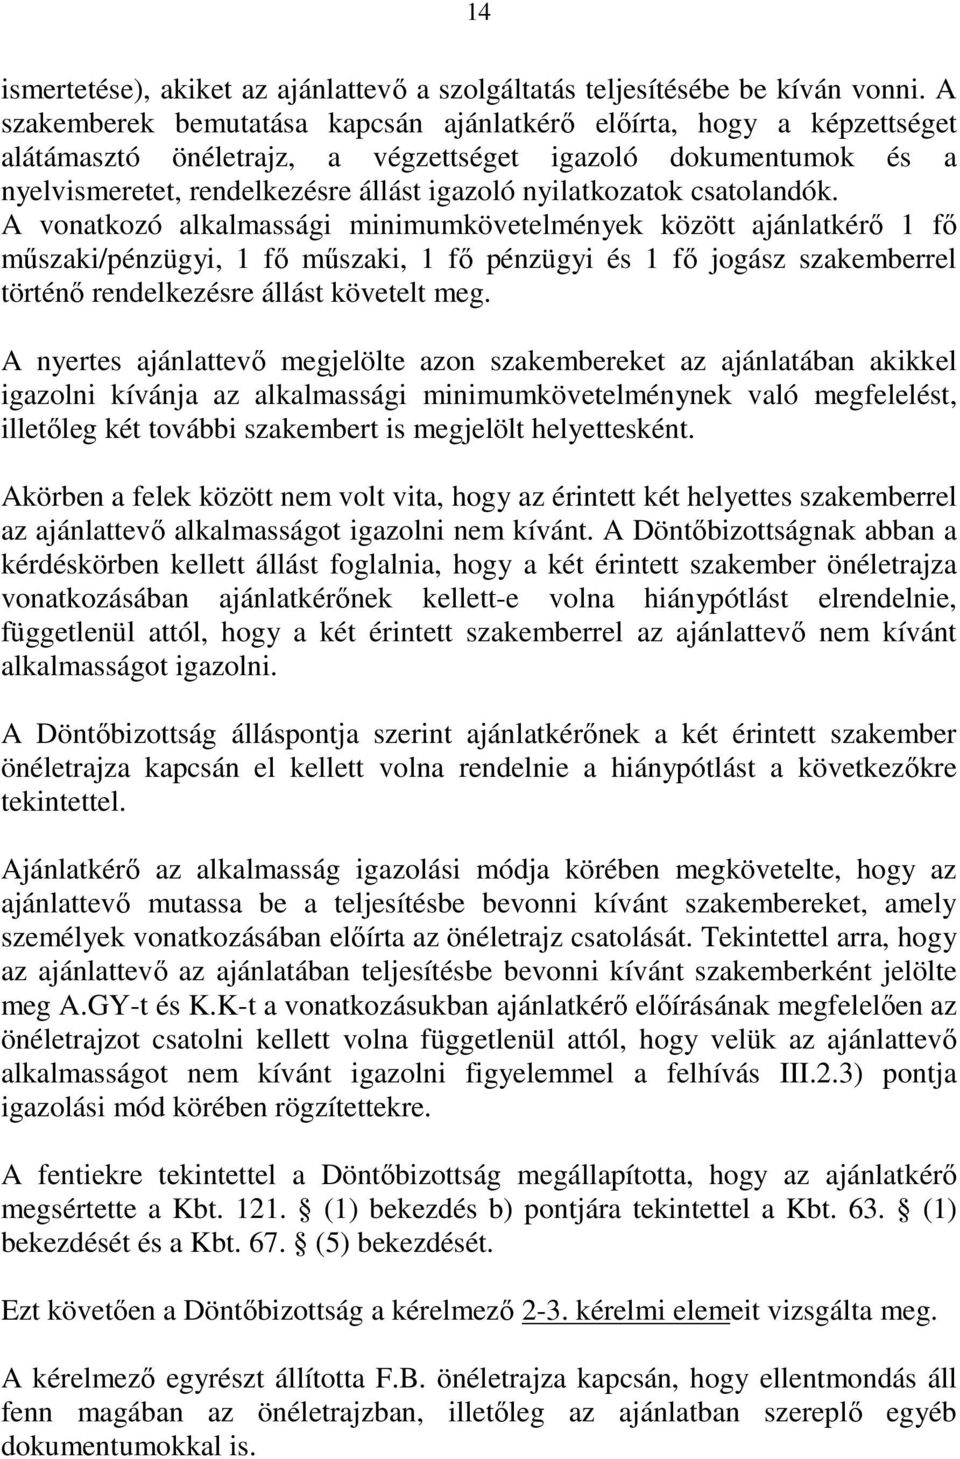 csatolandók. A vonatkozó alkalmassági minimumkövetelmények között ajánlatkérı 1 fı mőszaki/pénzügyi, 1 fı mőszaki, 1 fı pénzügyi és 1 fı jogász szakemberrel történı rendelkezésre állást követelt meg.